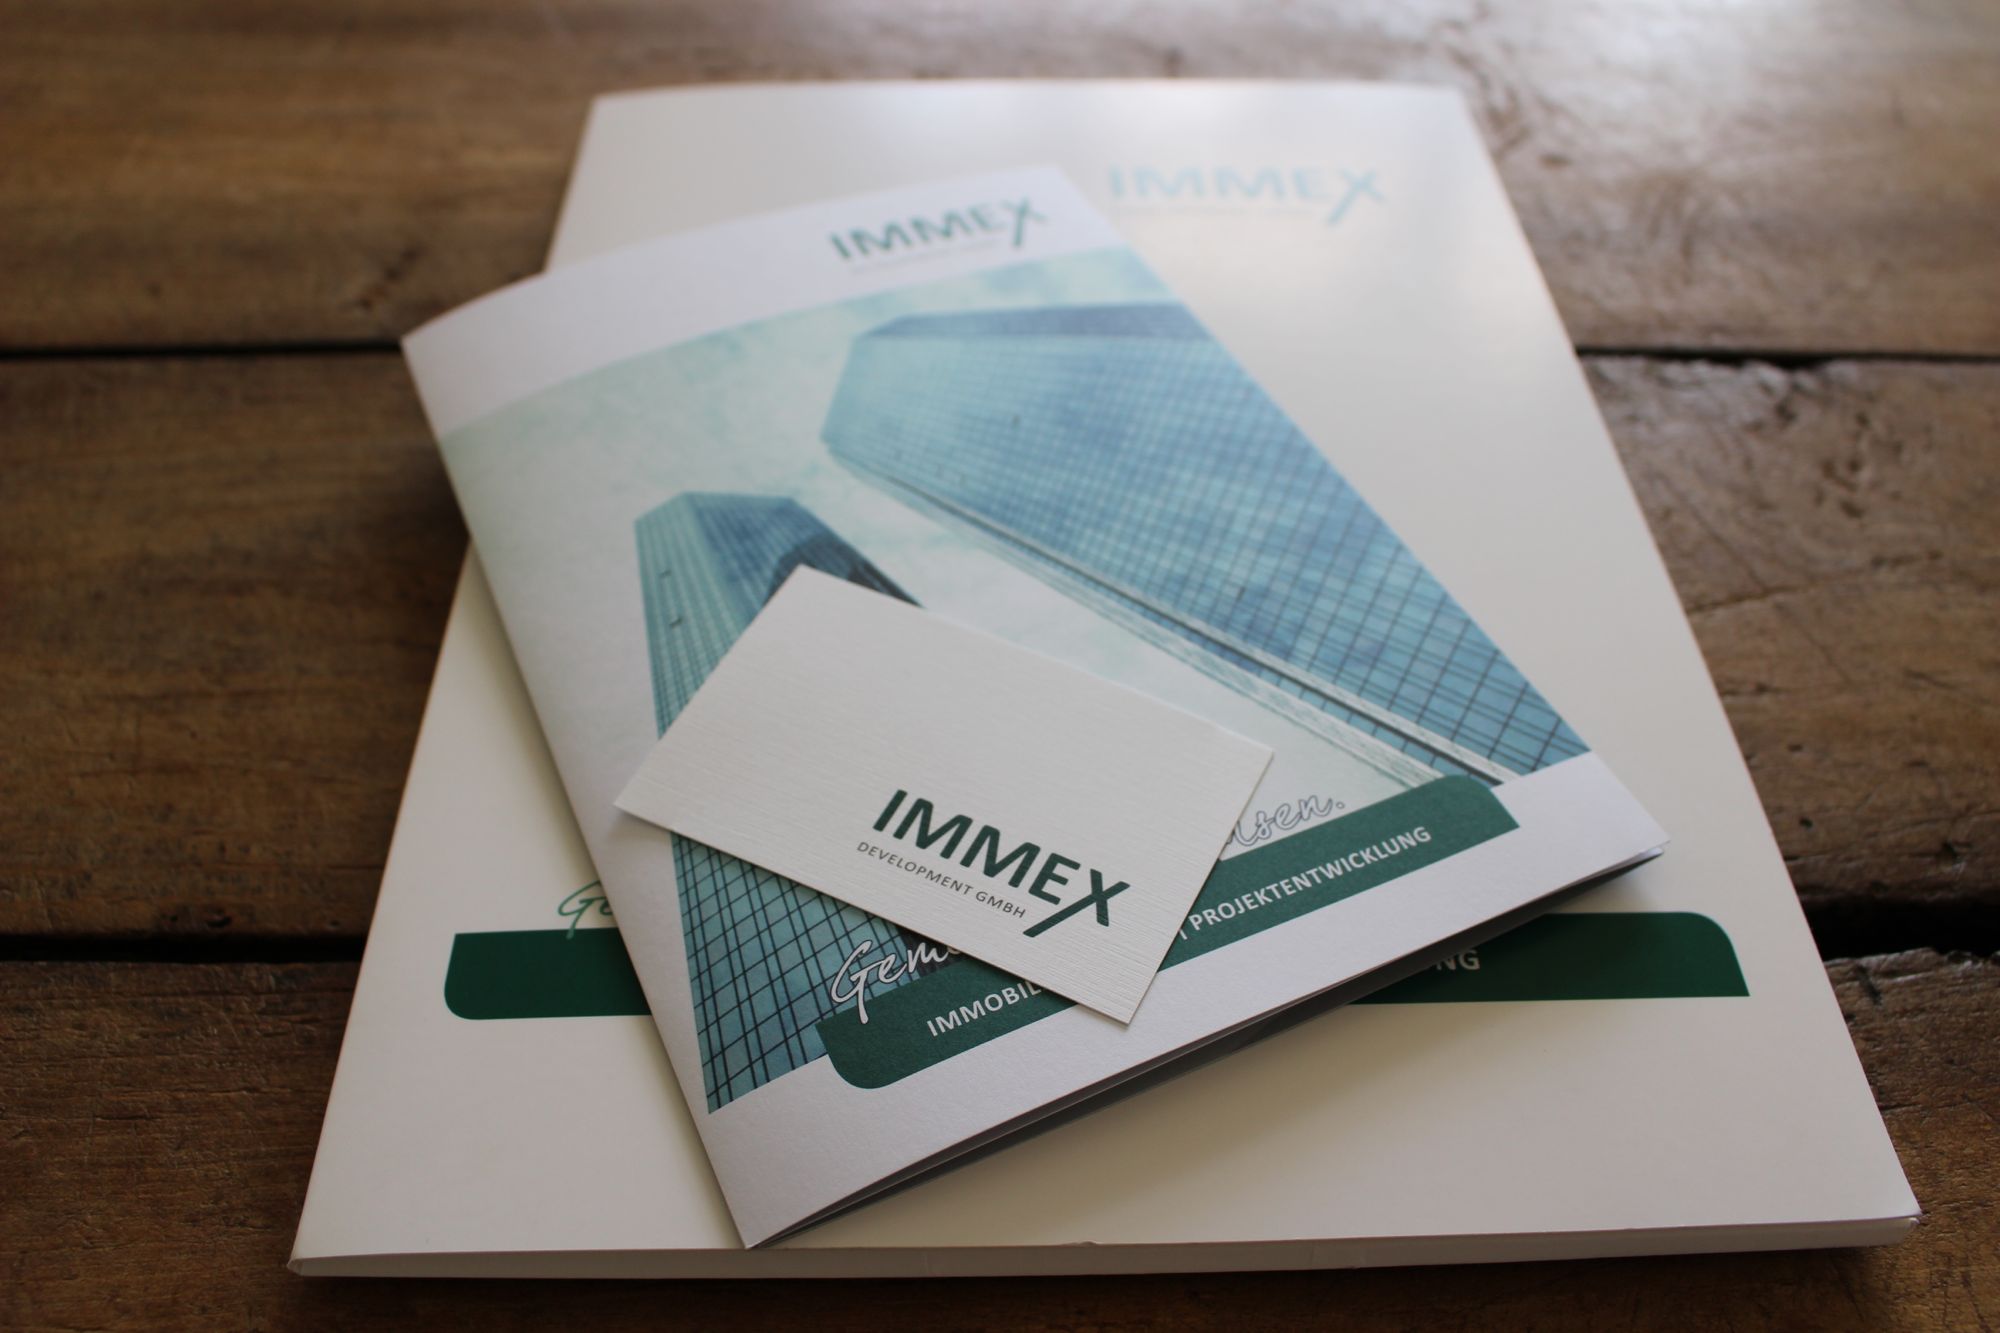 Drucksorten für Immex Development GmbH